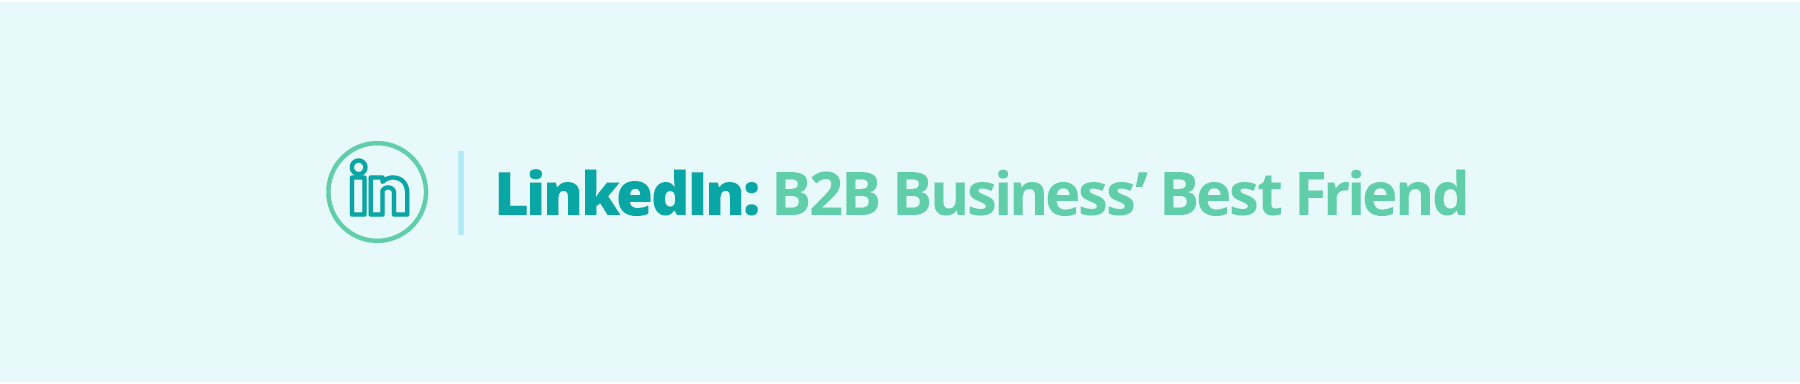 LinkedIn: B2B Business' Best Friend